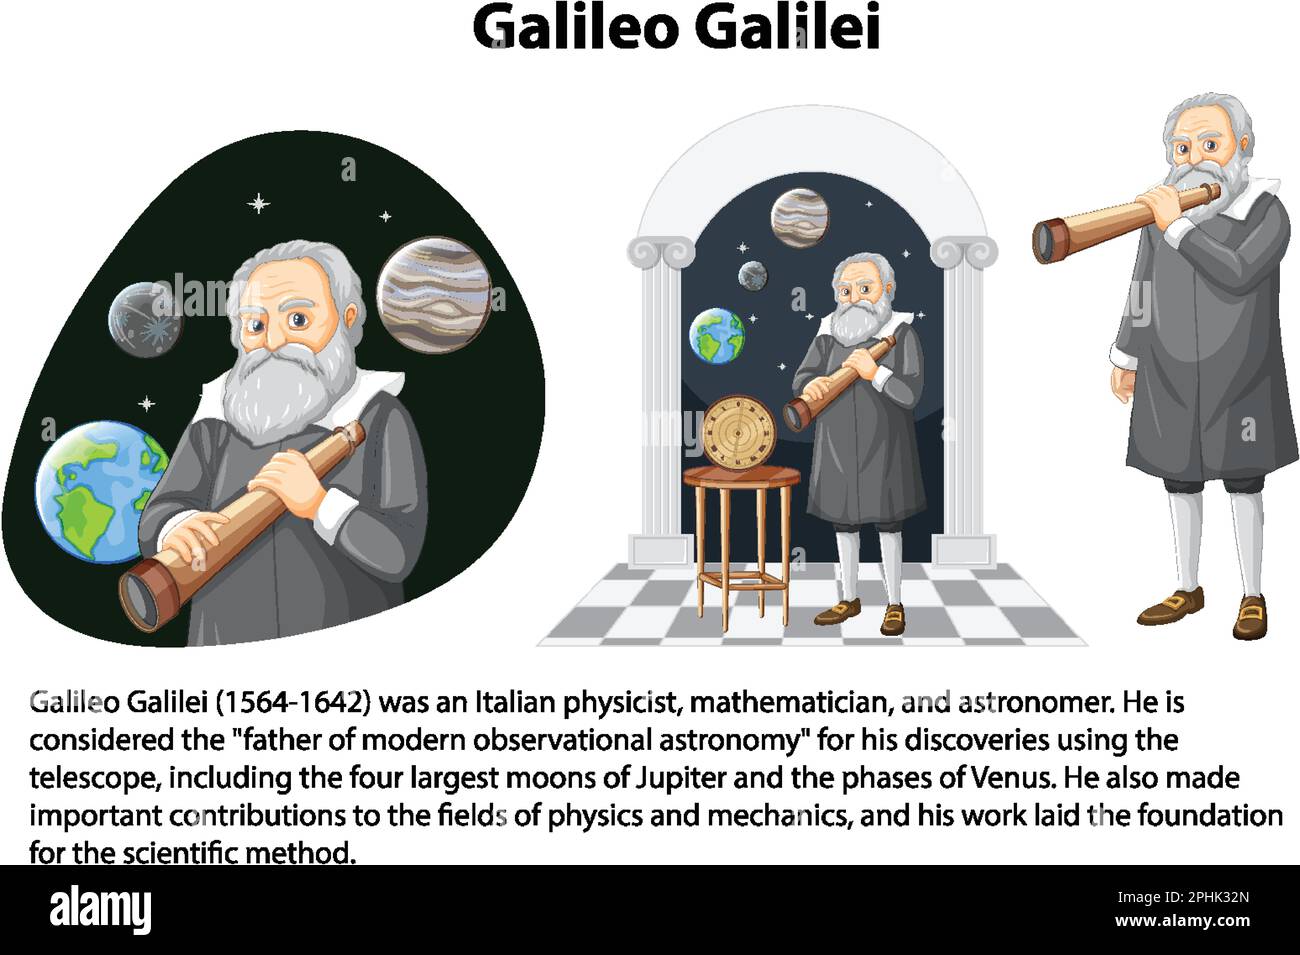 Biografía informativa de la ilustración de Galileo Galilei Ilustración del Vector